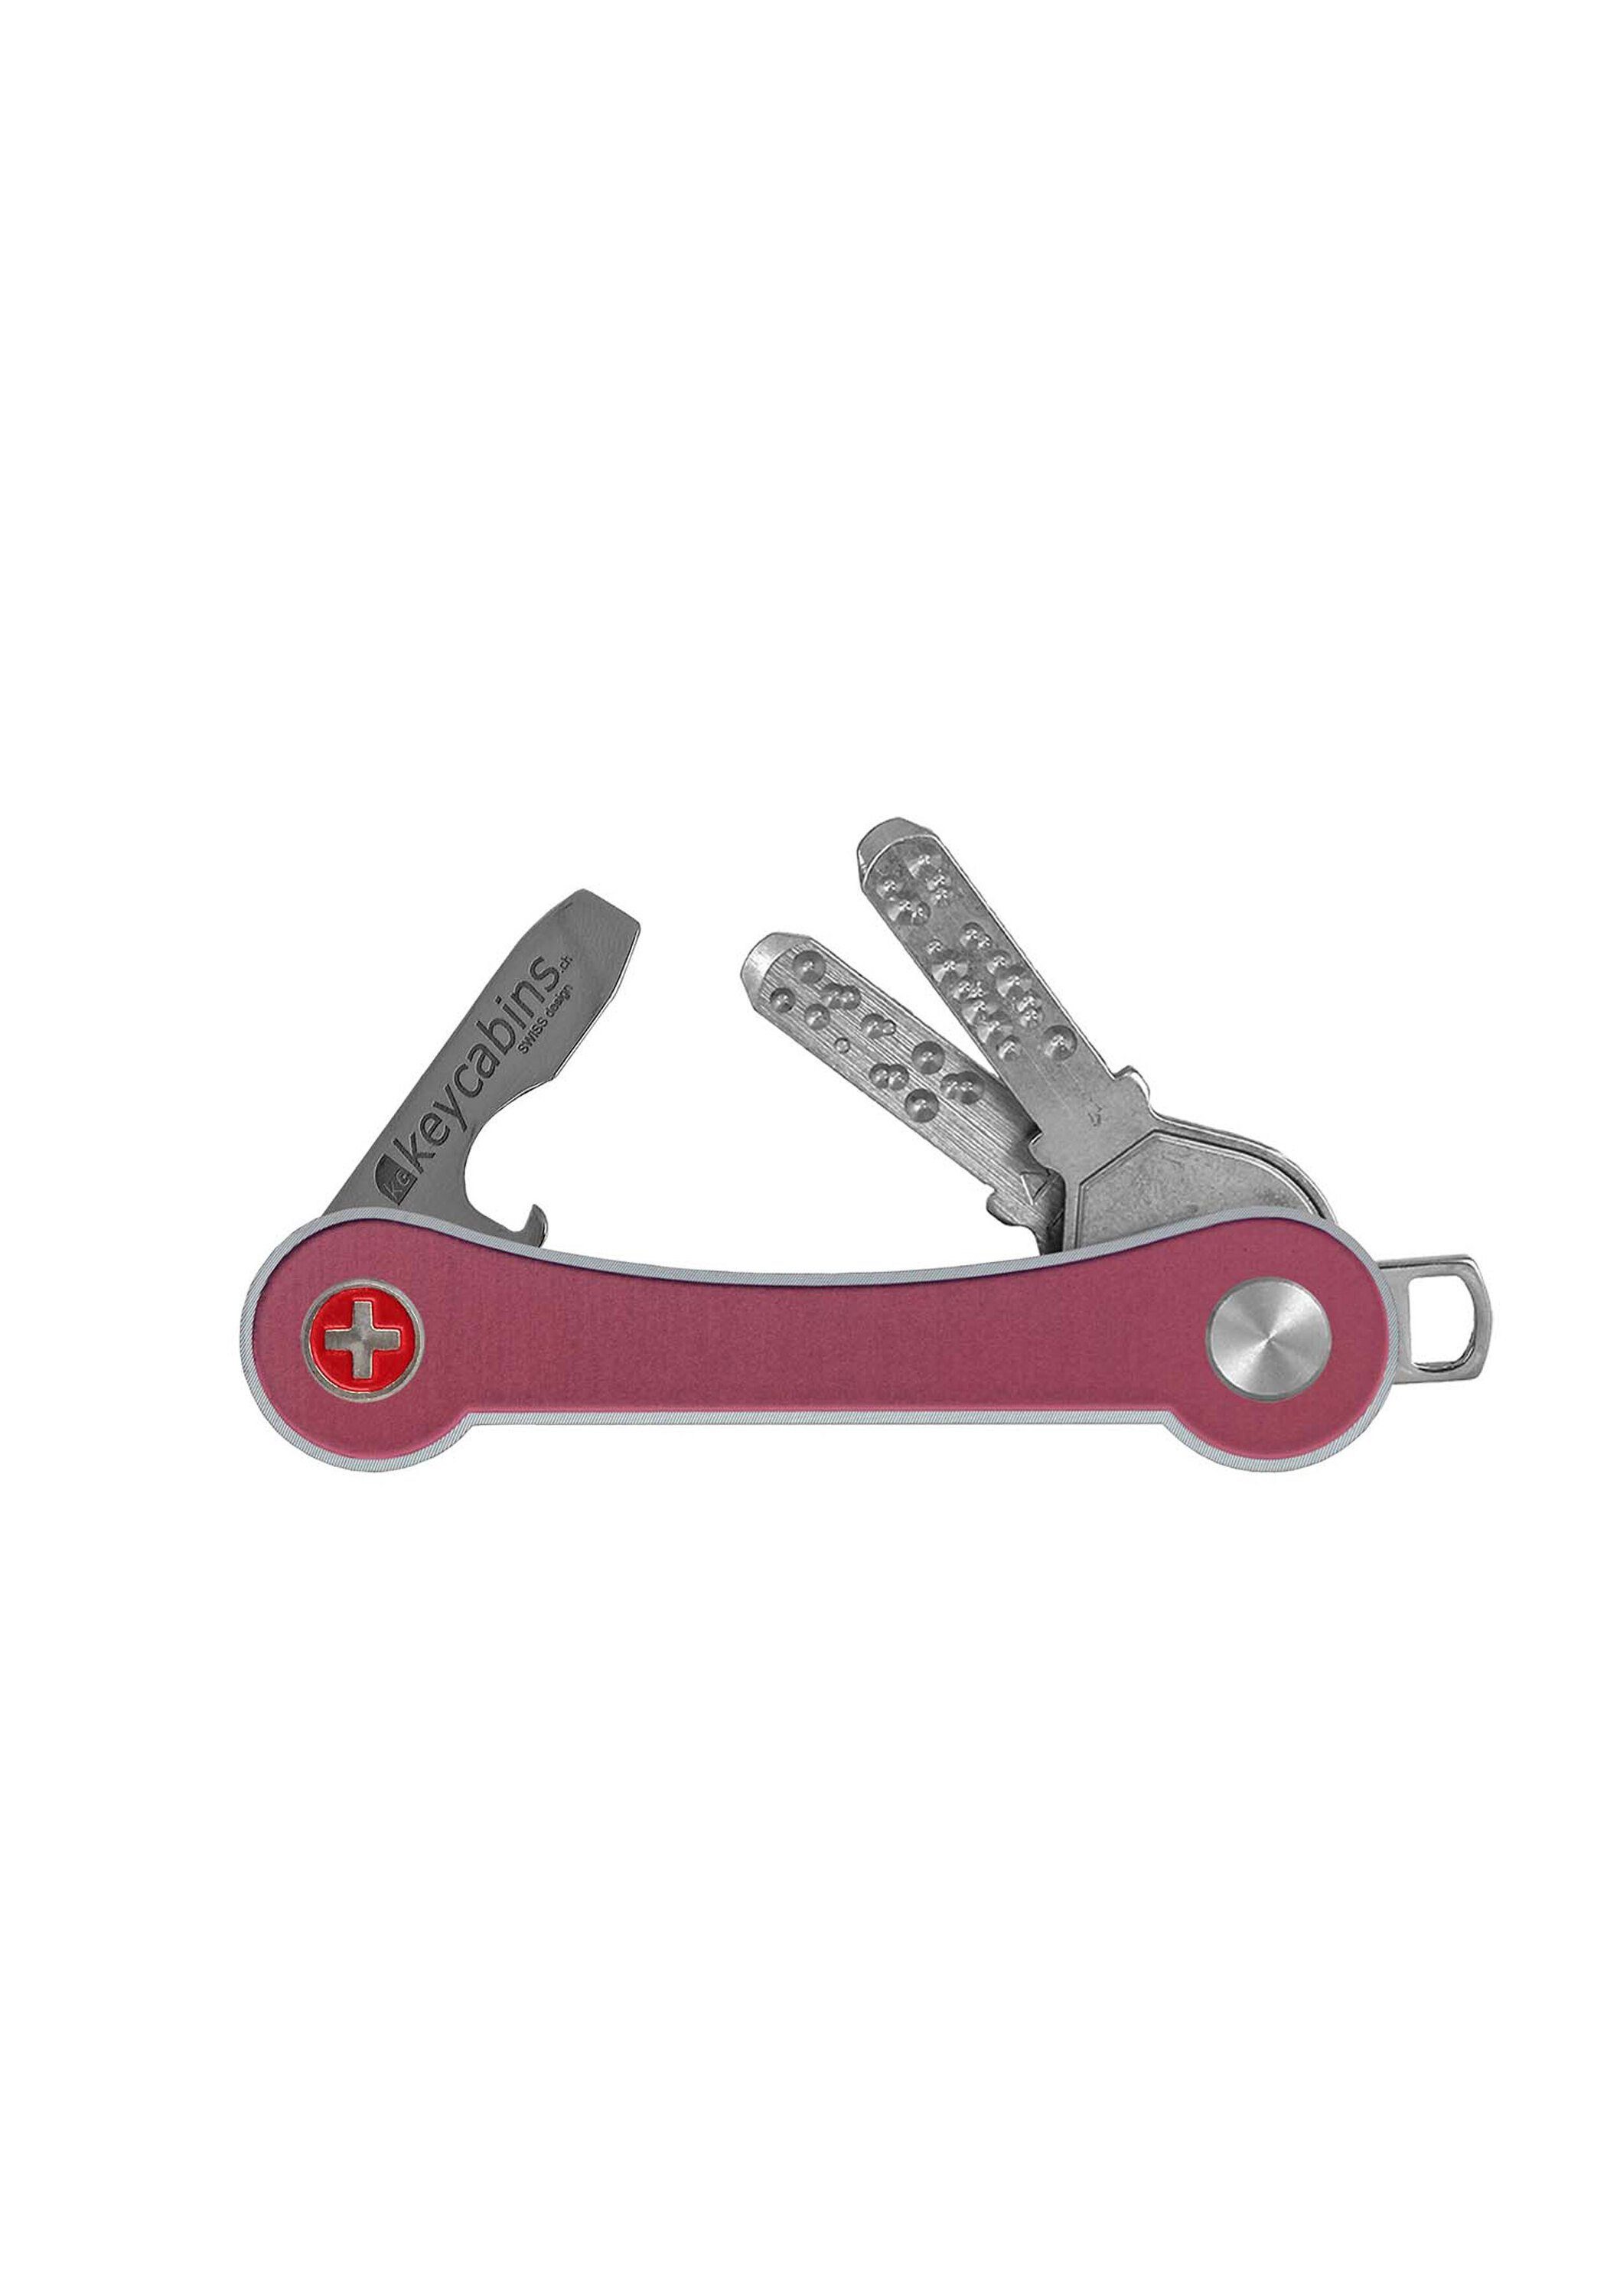 Made frame, pink Aluminium Schlüsselanhänger SWISS keycabins